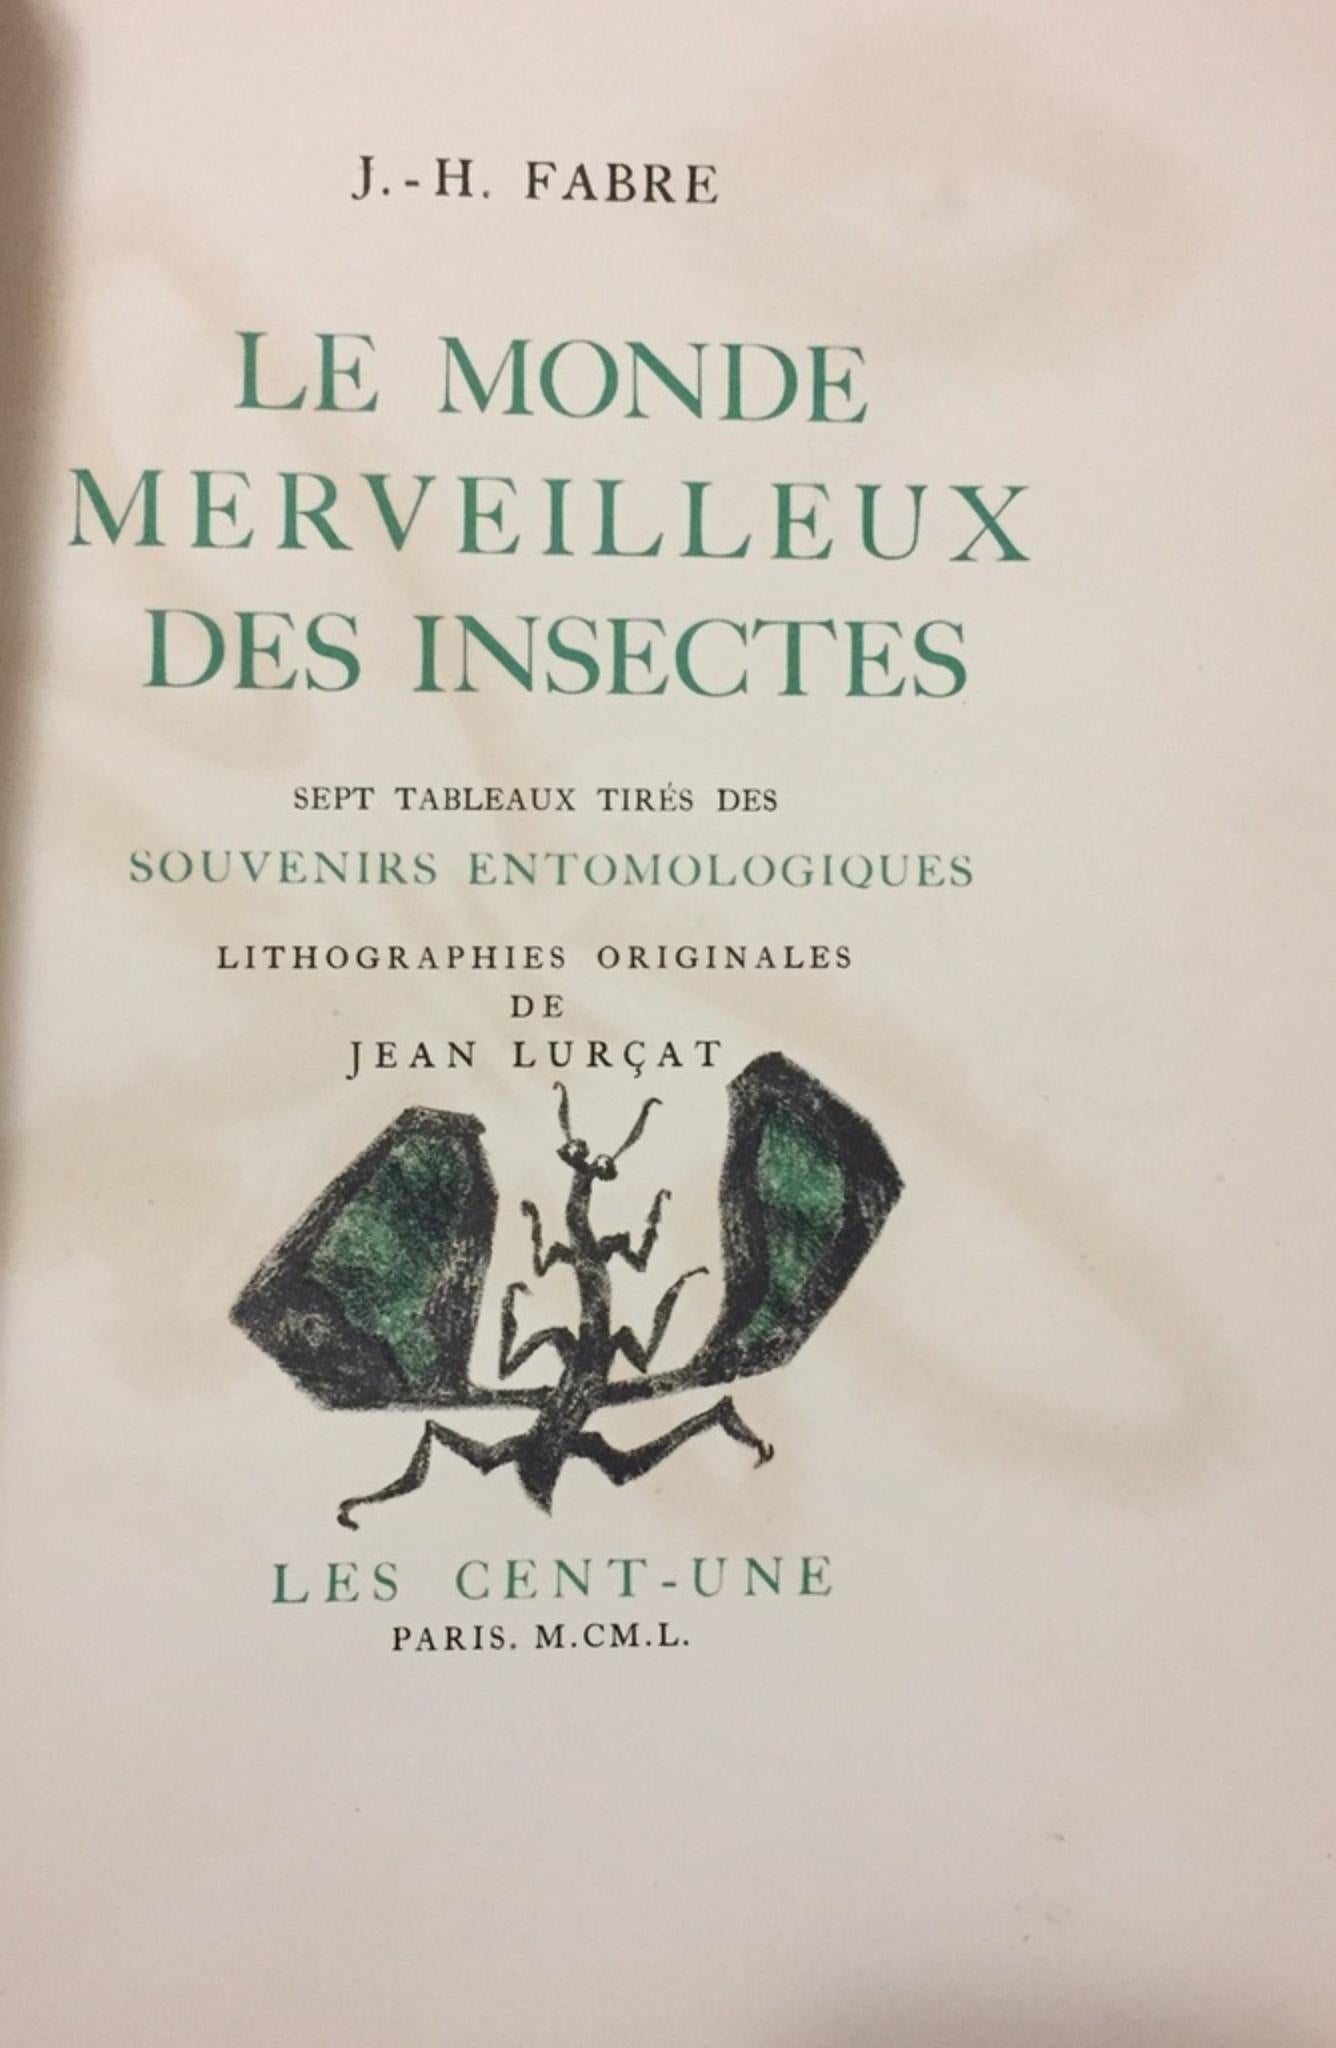 Le Monde Merveilleux des Insectes - Rare Book Illustrated by Jean Lurçat - 1950 - Art by Jean Henri Fabre